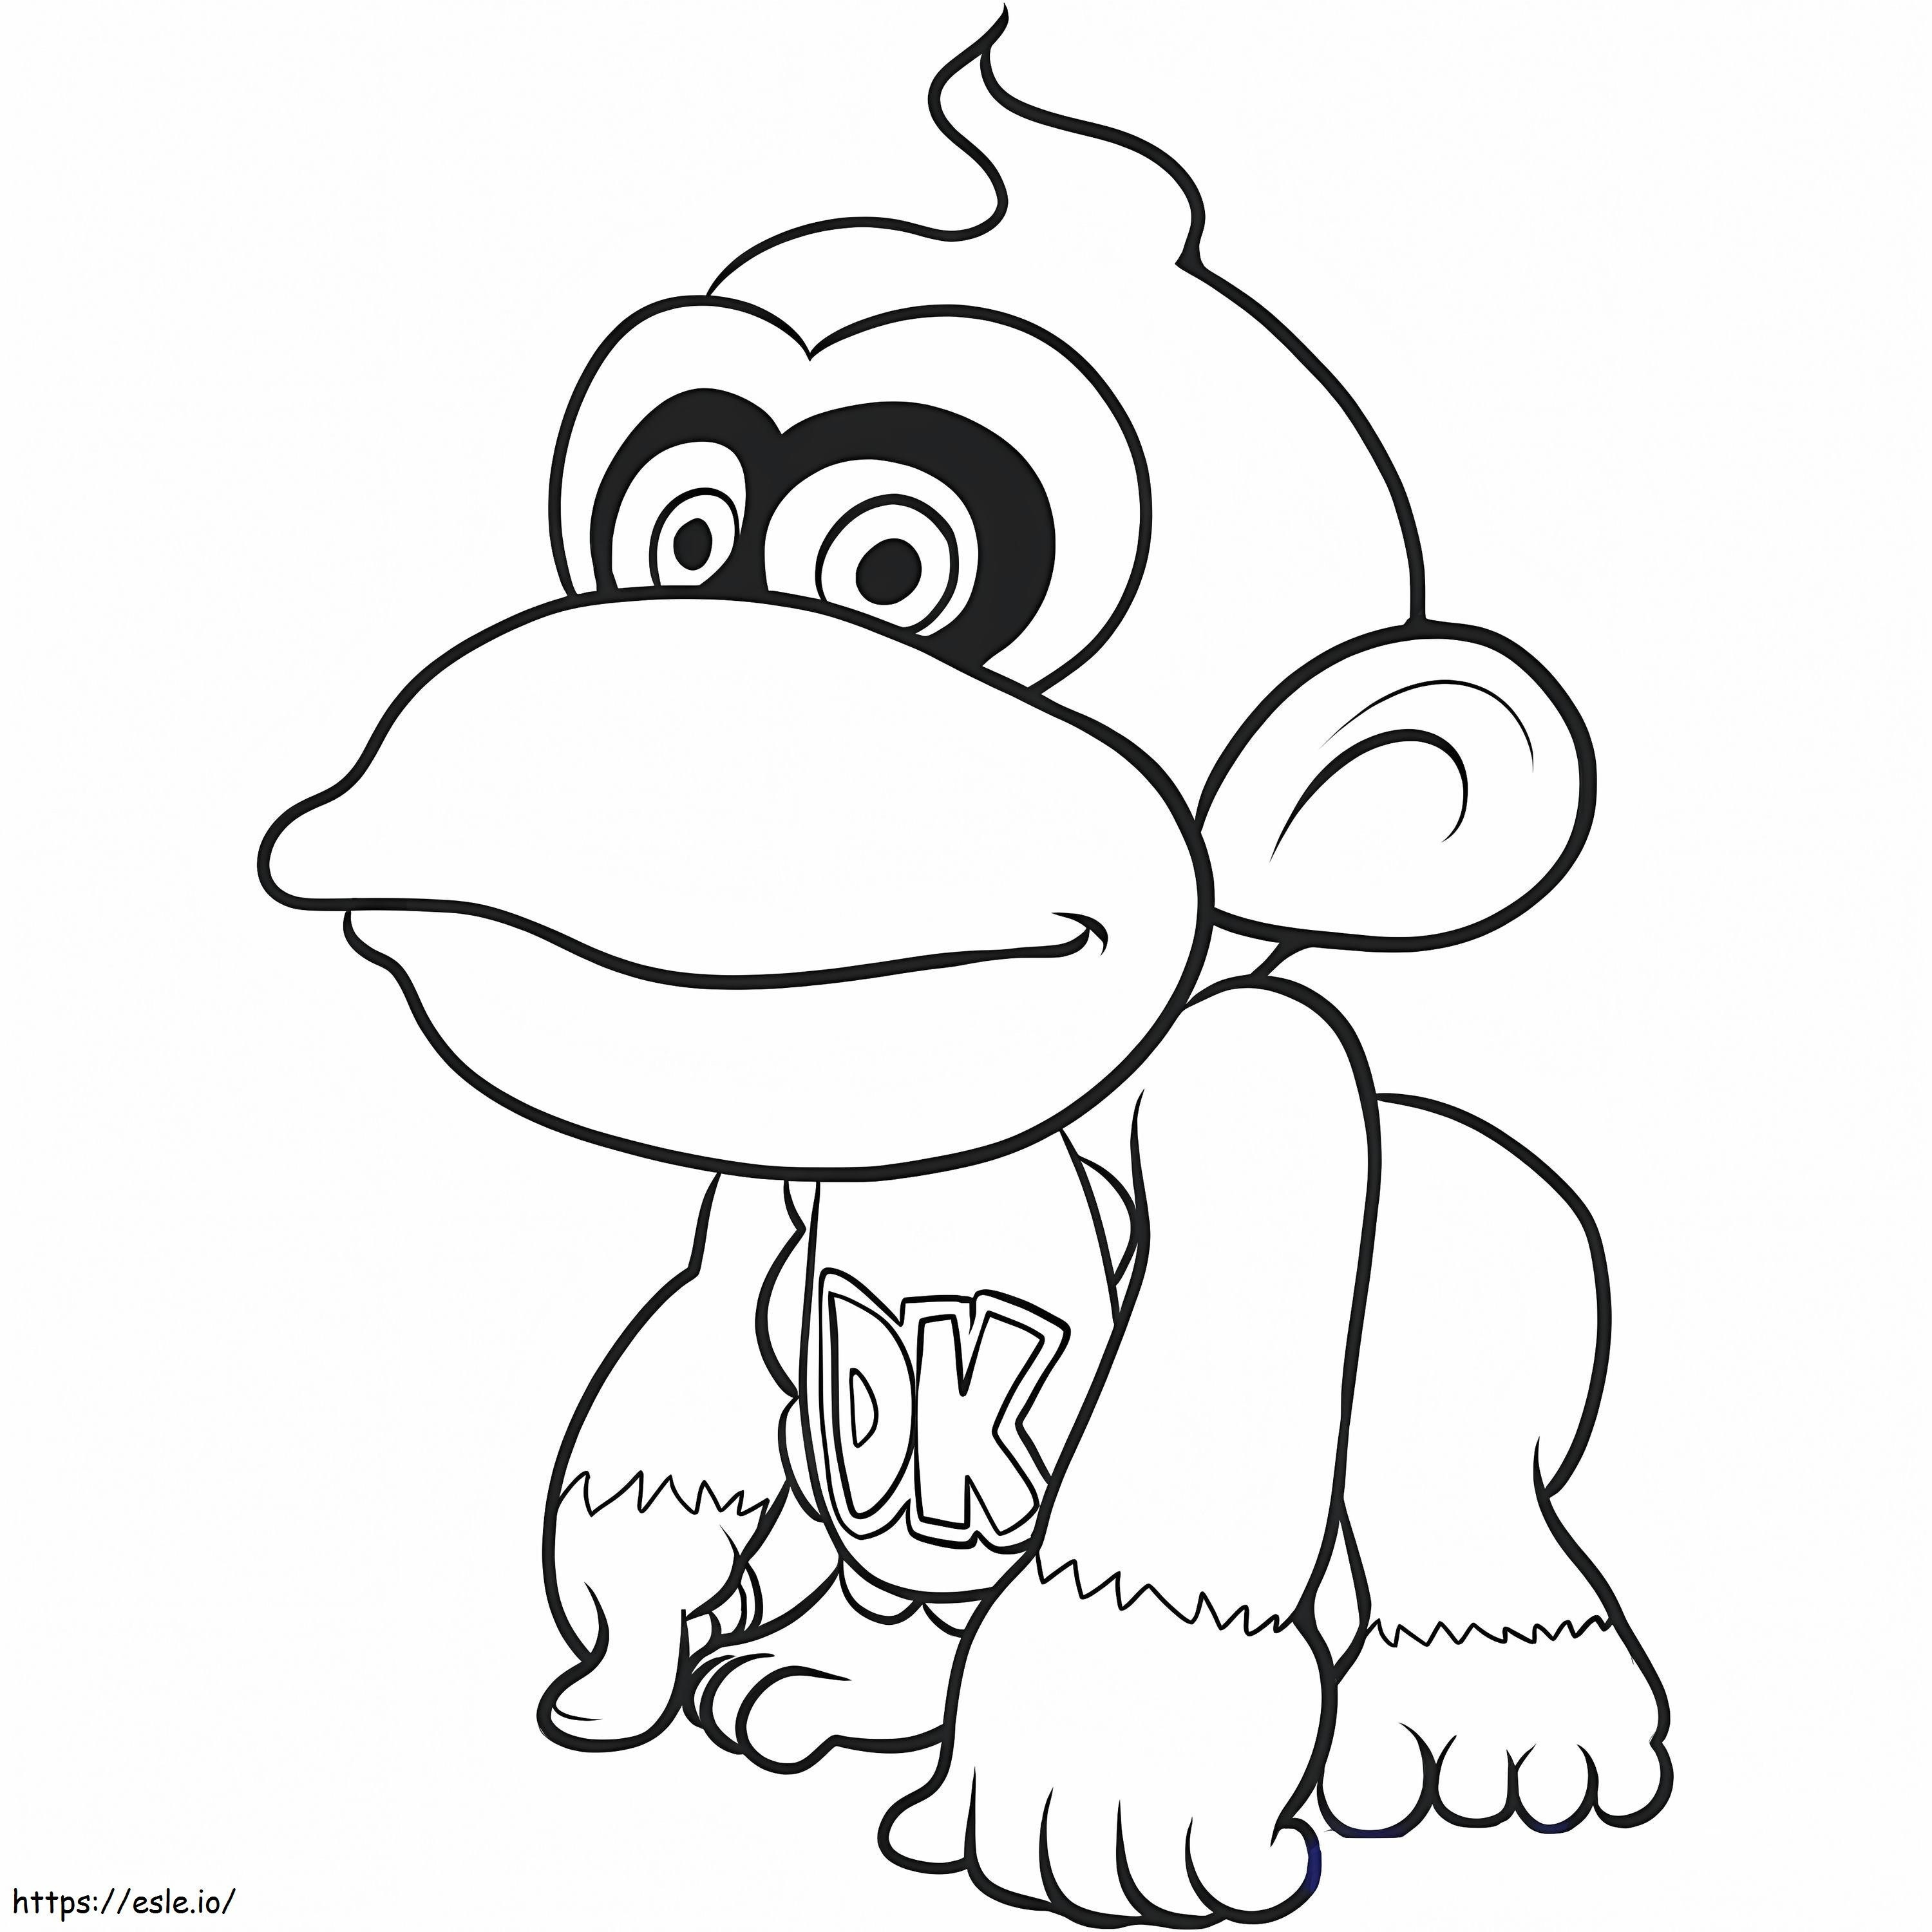 Il piccolo Donkey Kong da colorare